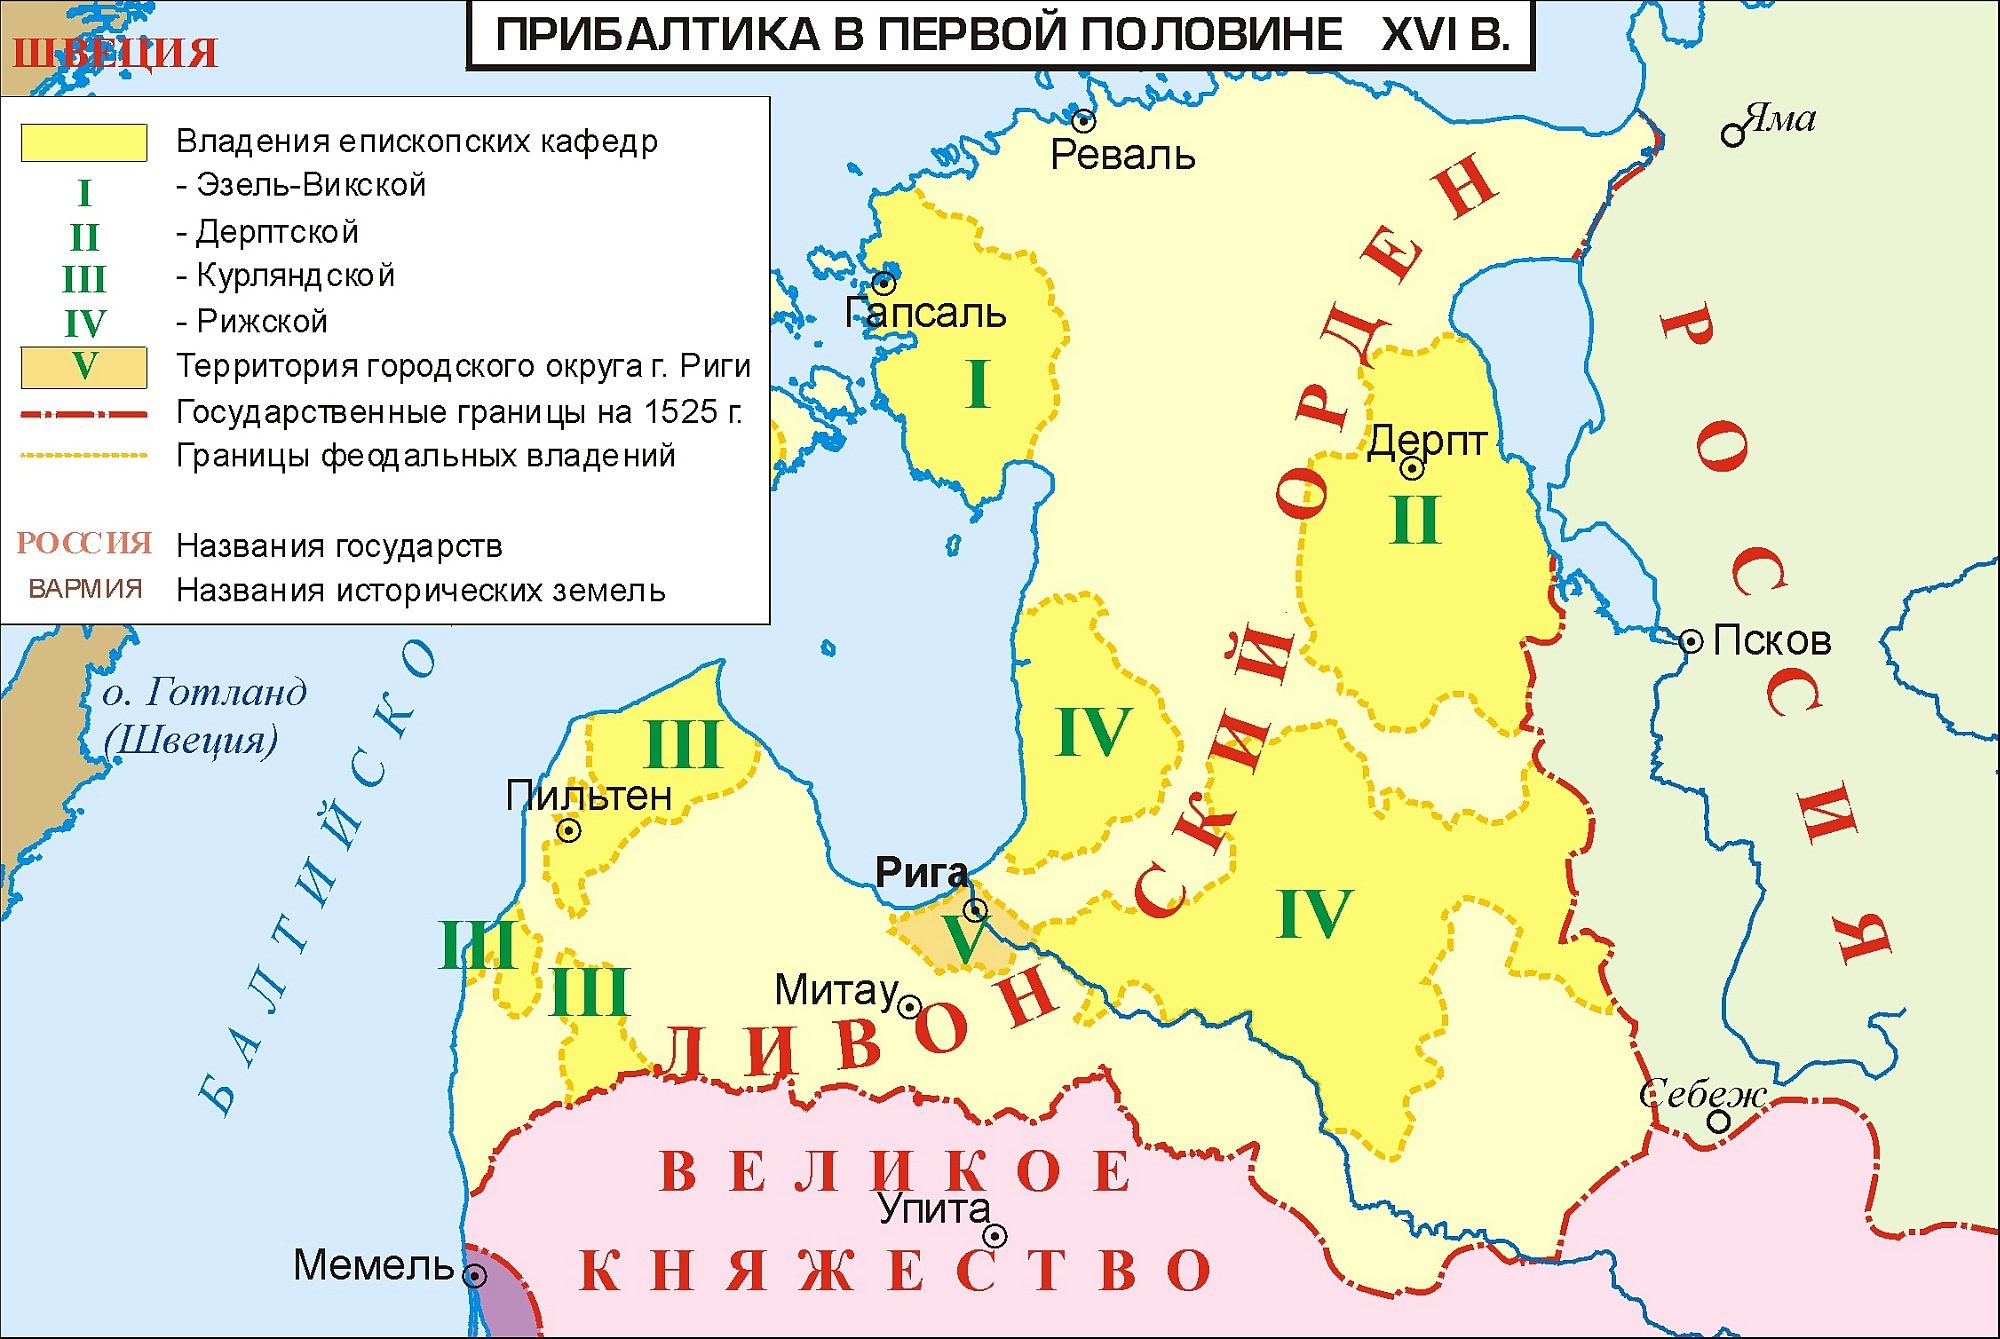 Ливонский орден в 13 веке на карте